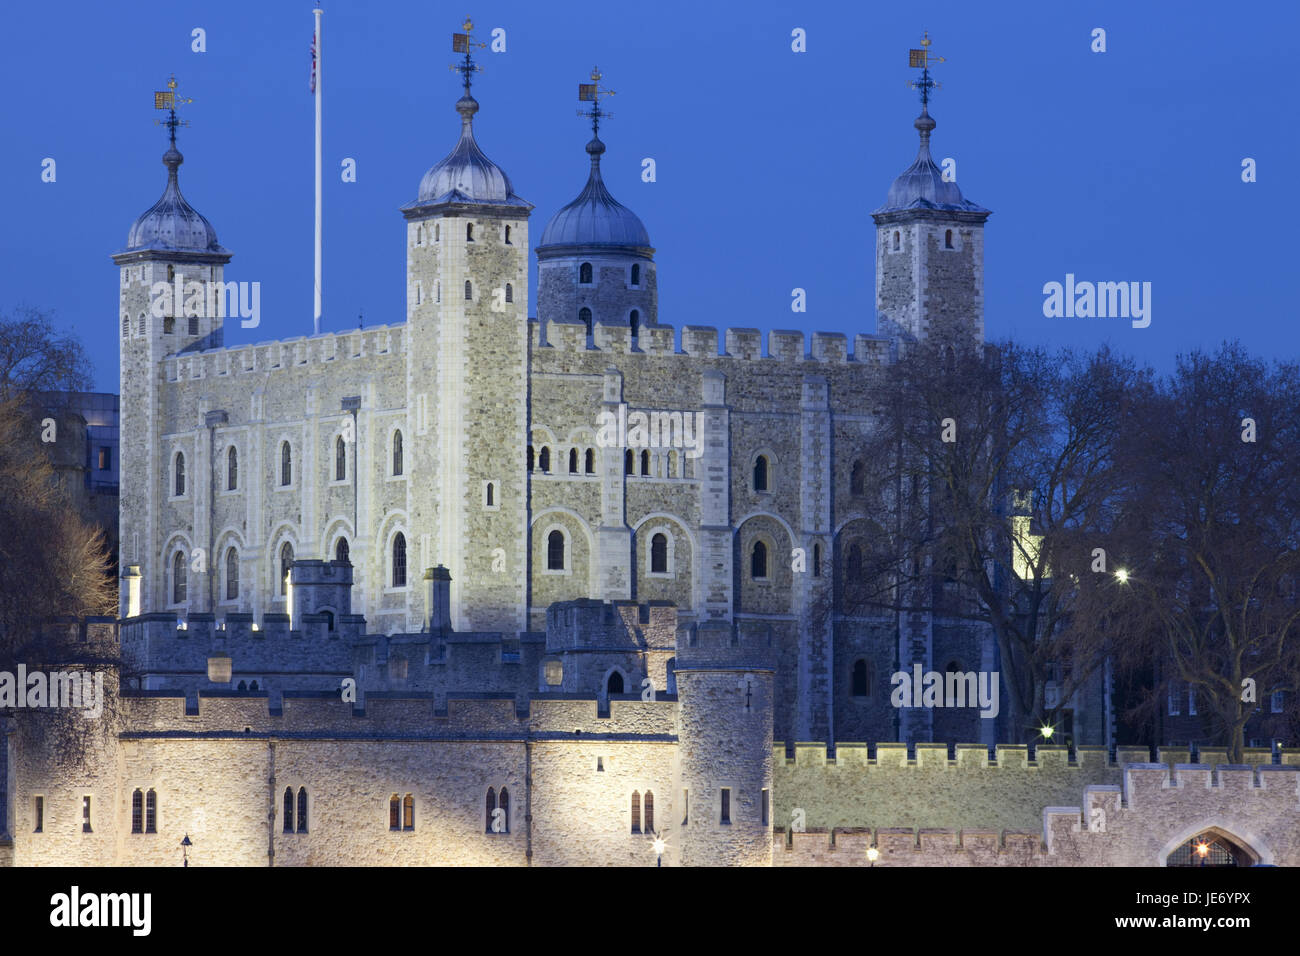 Inghilterra, Londra, la Torre di Londra, il complesso di edifici, REGNO UNITO, città, castello, edificio, palace, torri, mura difensive, luogo di interesse, turismo, sera, al tramonto, Foto Stock